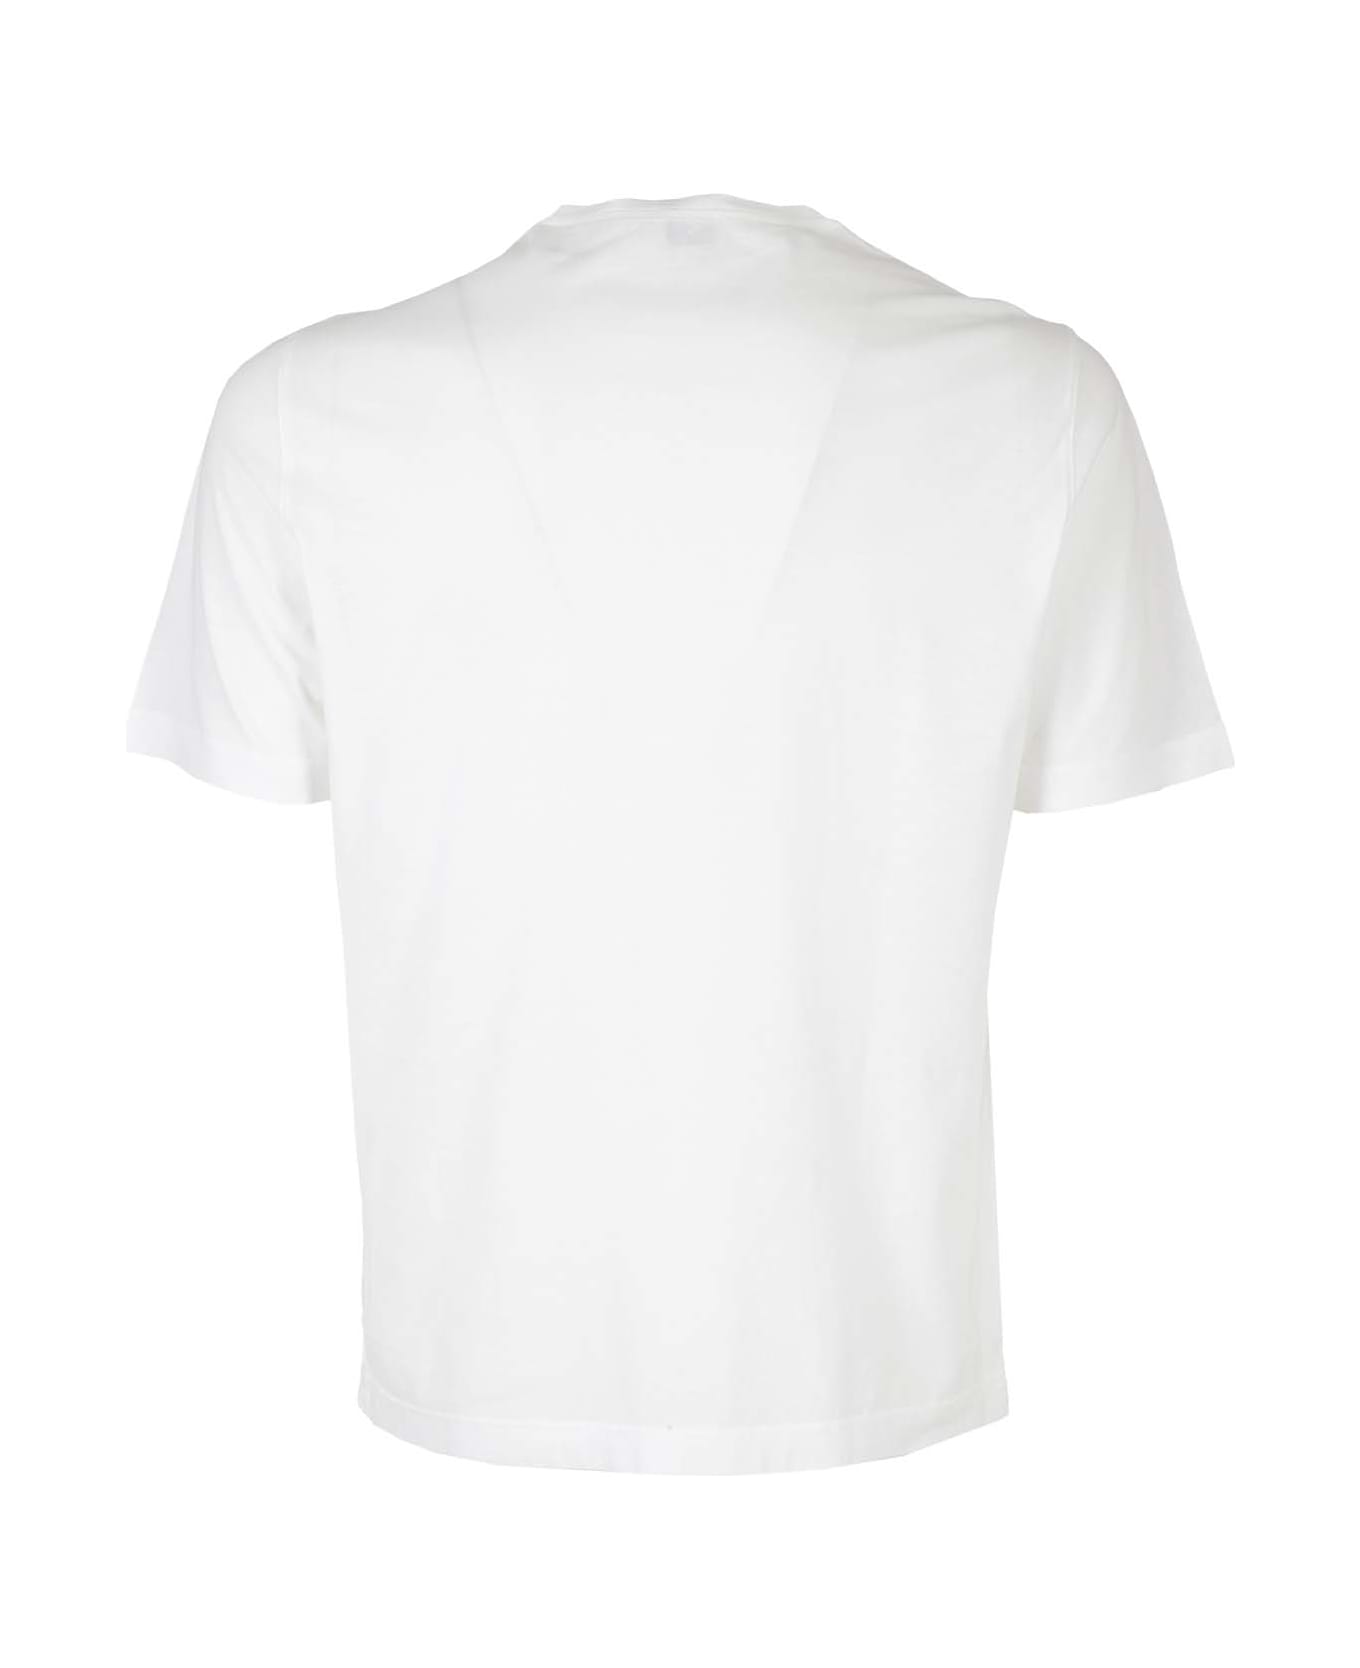 Kired Kiss Man Tshirt - White シャツ